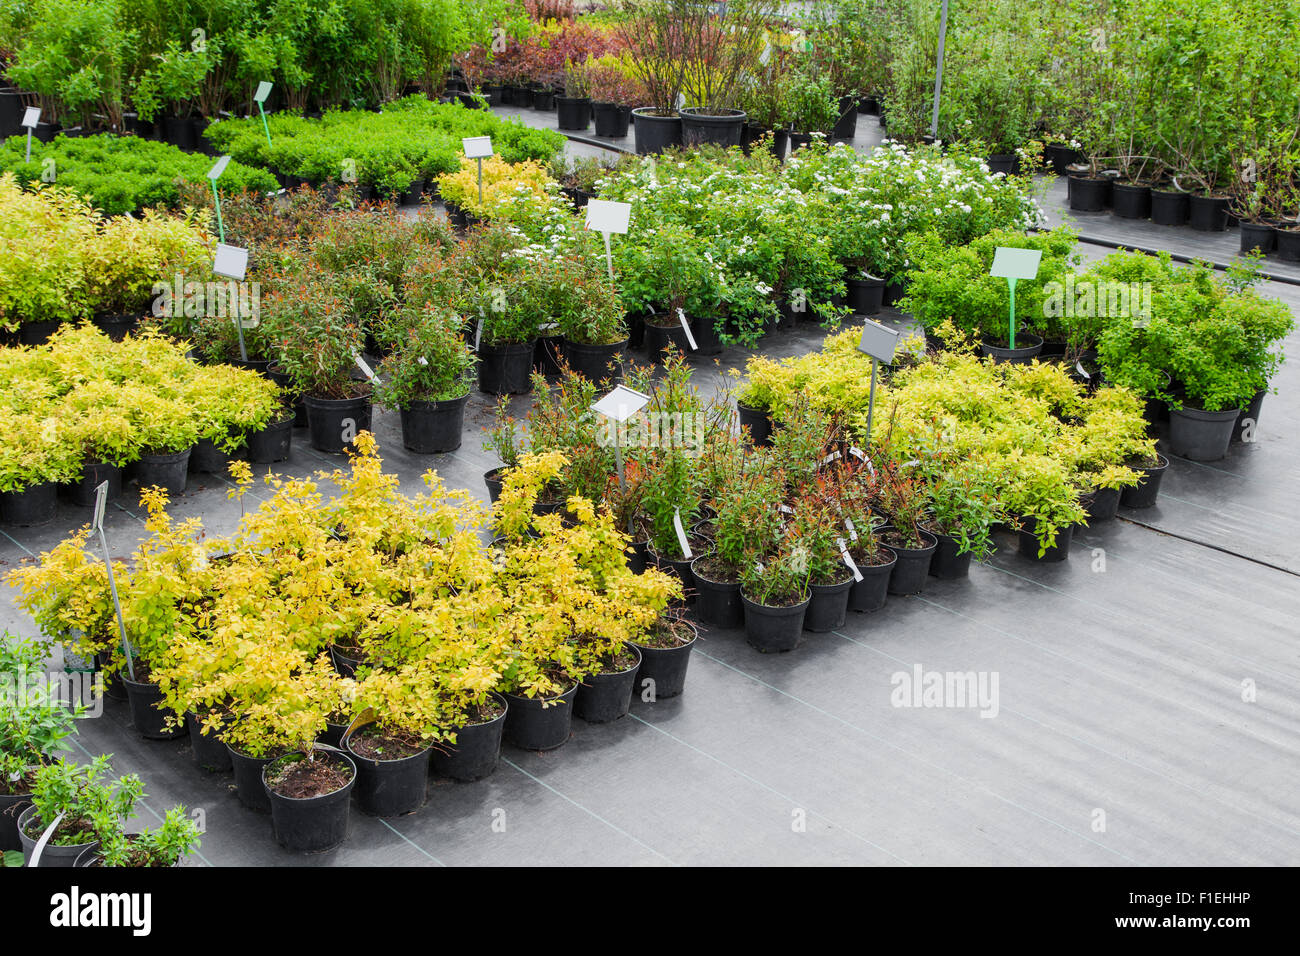 Spirea plants in pots on sale Stock Photo